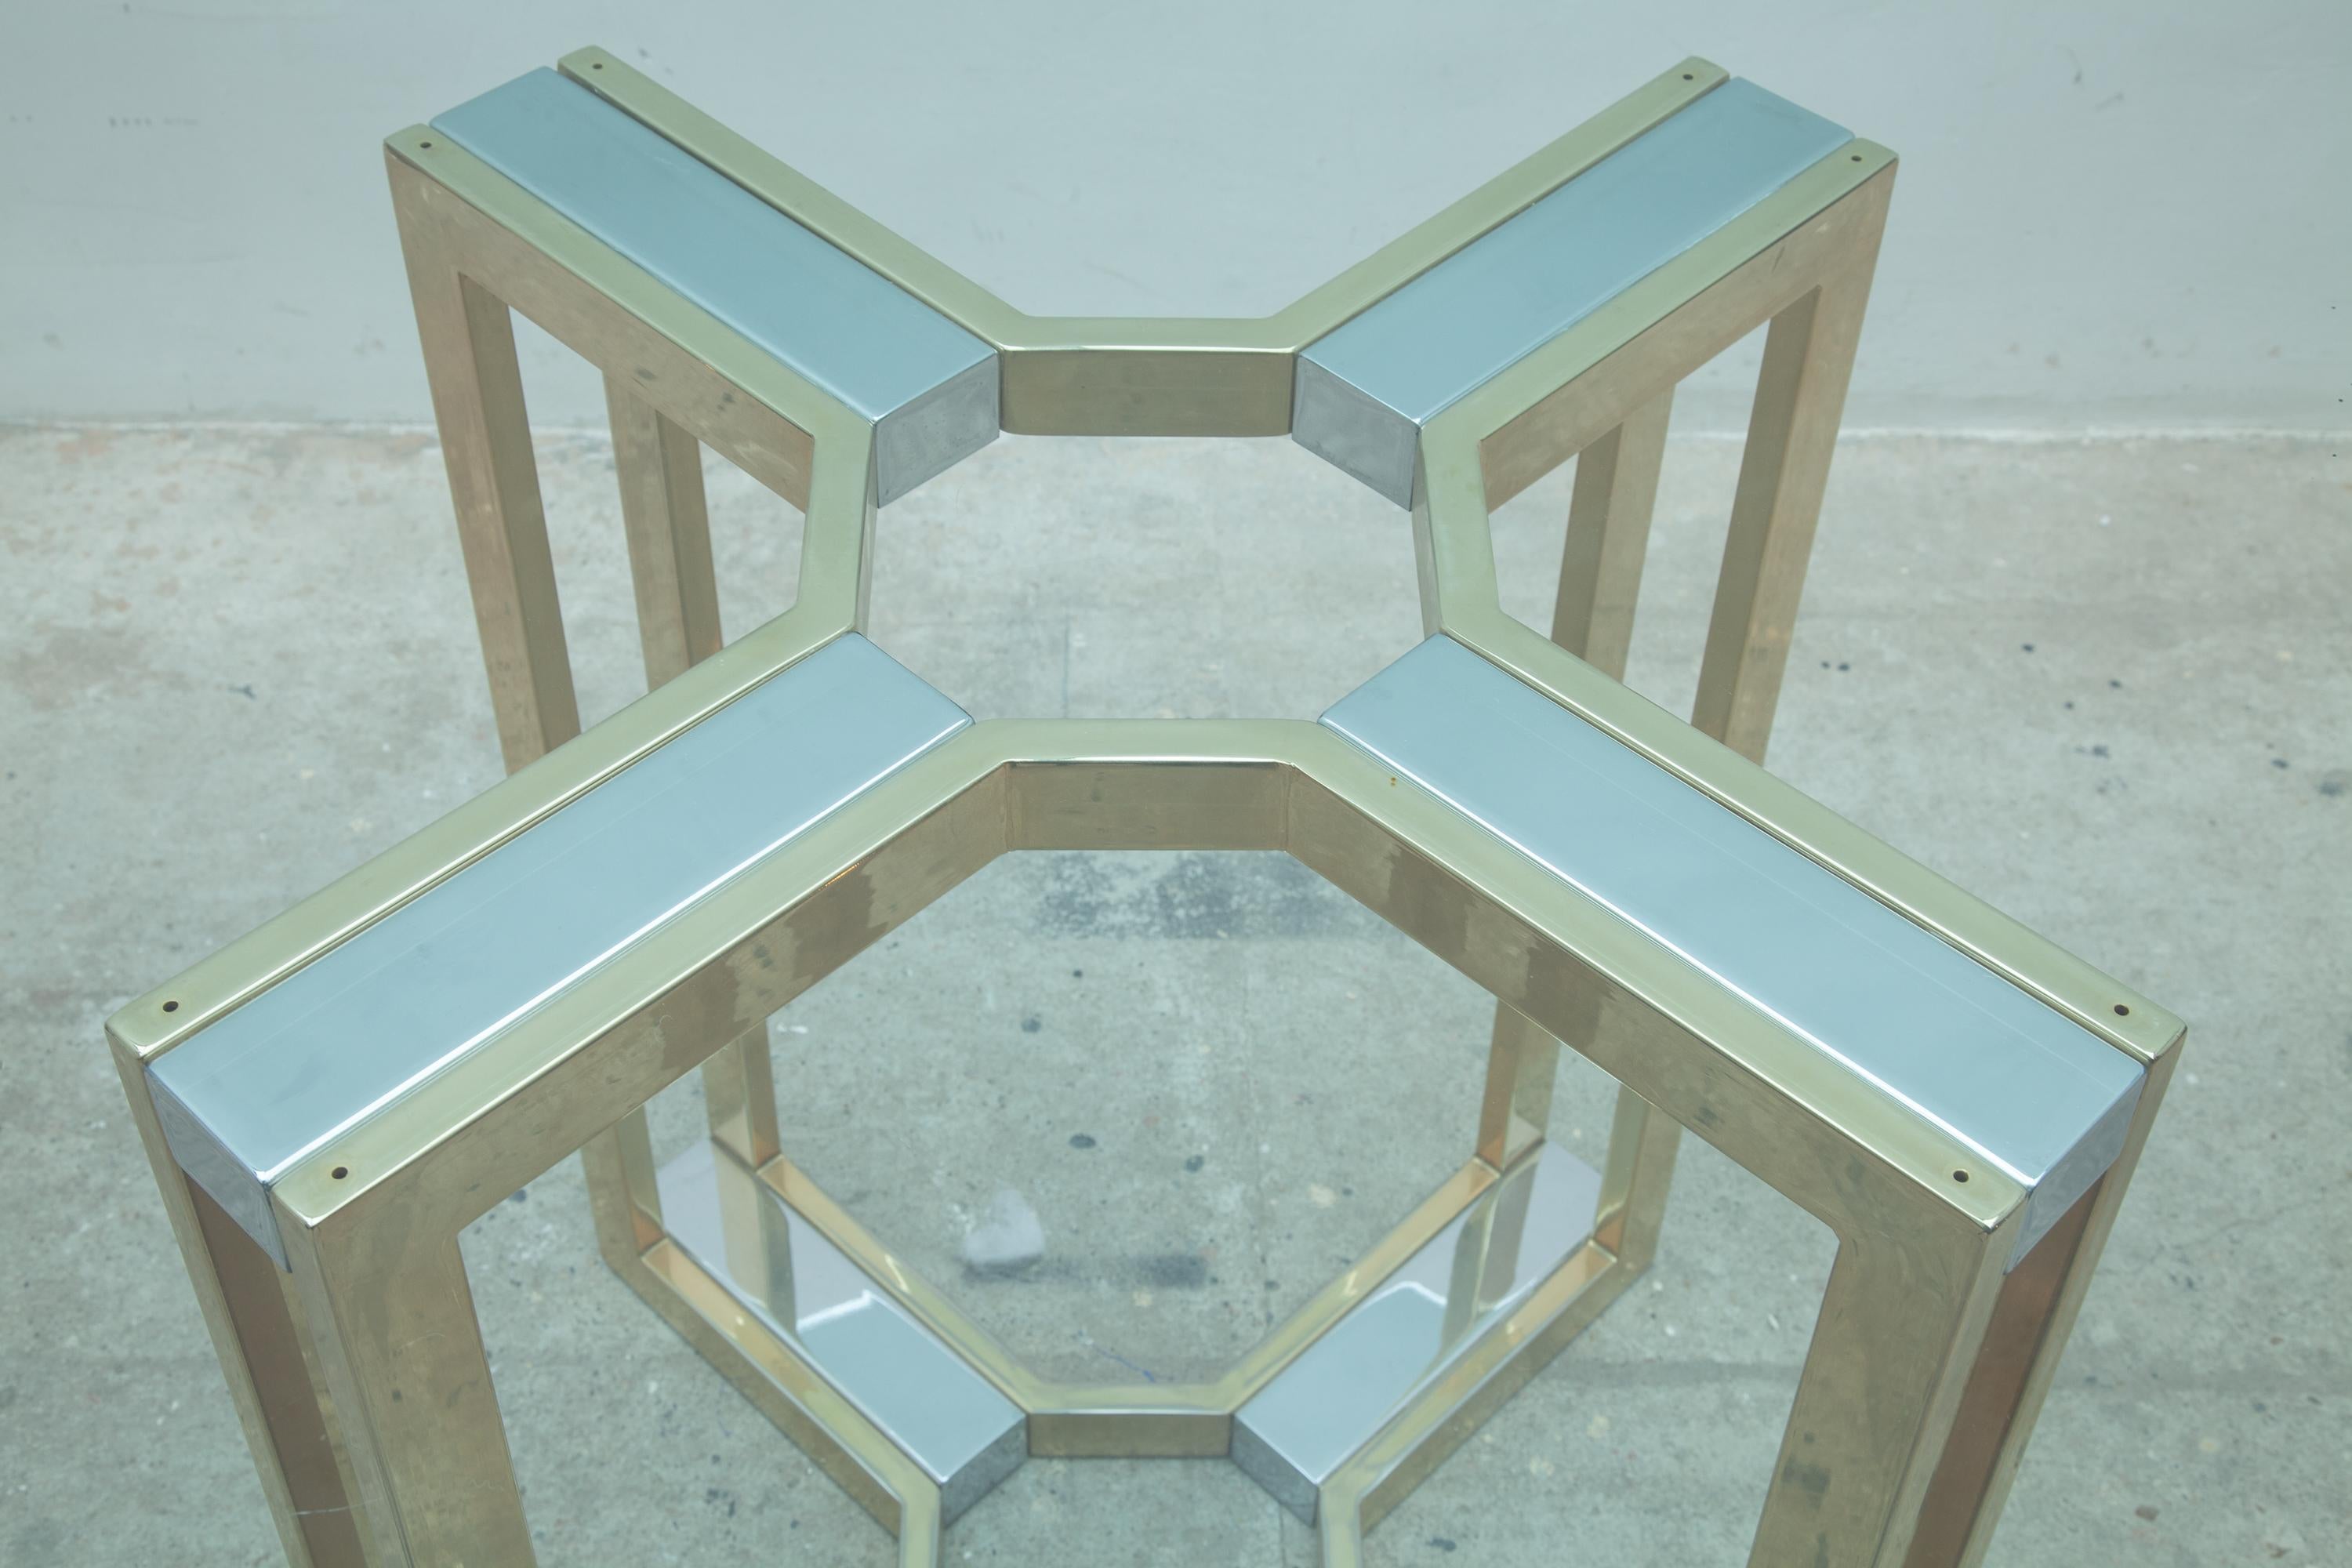 Schlanker runder Tisch mit dicker Klarglasplatte von Romeo Rega, Italien 1970er Jahre.
Beeindruckende geometrische Form aus Messing und verchromtem Stahl.
In perfektem Zustand.
Glas: 140 cm Durchmesser, das Glas ist in sehr gutem Zustand, ohne